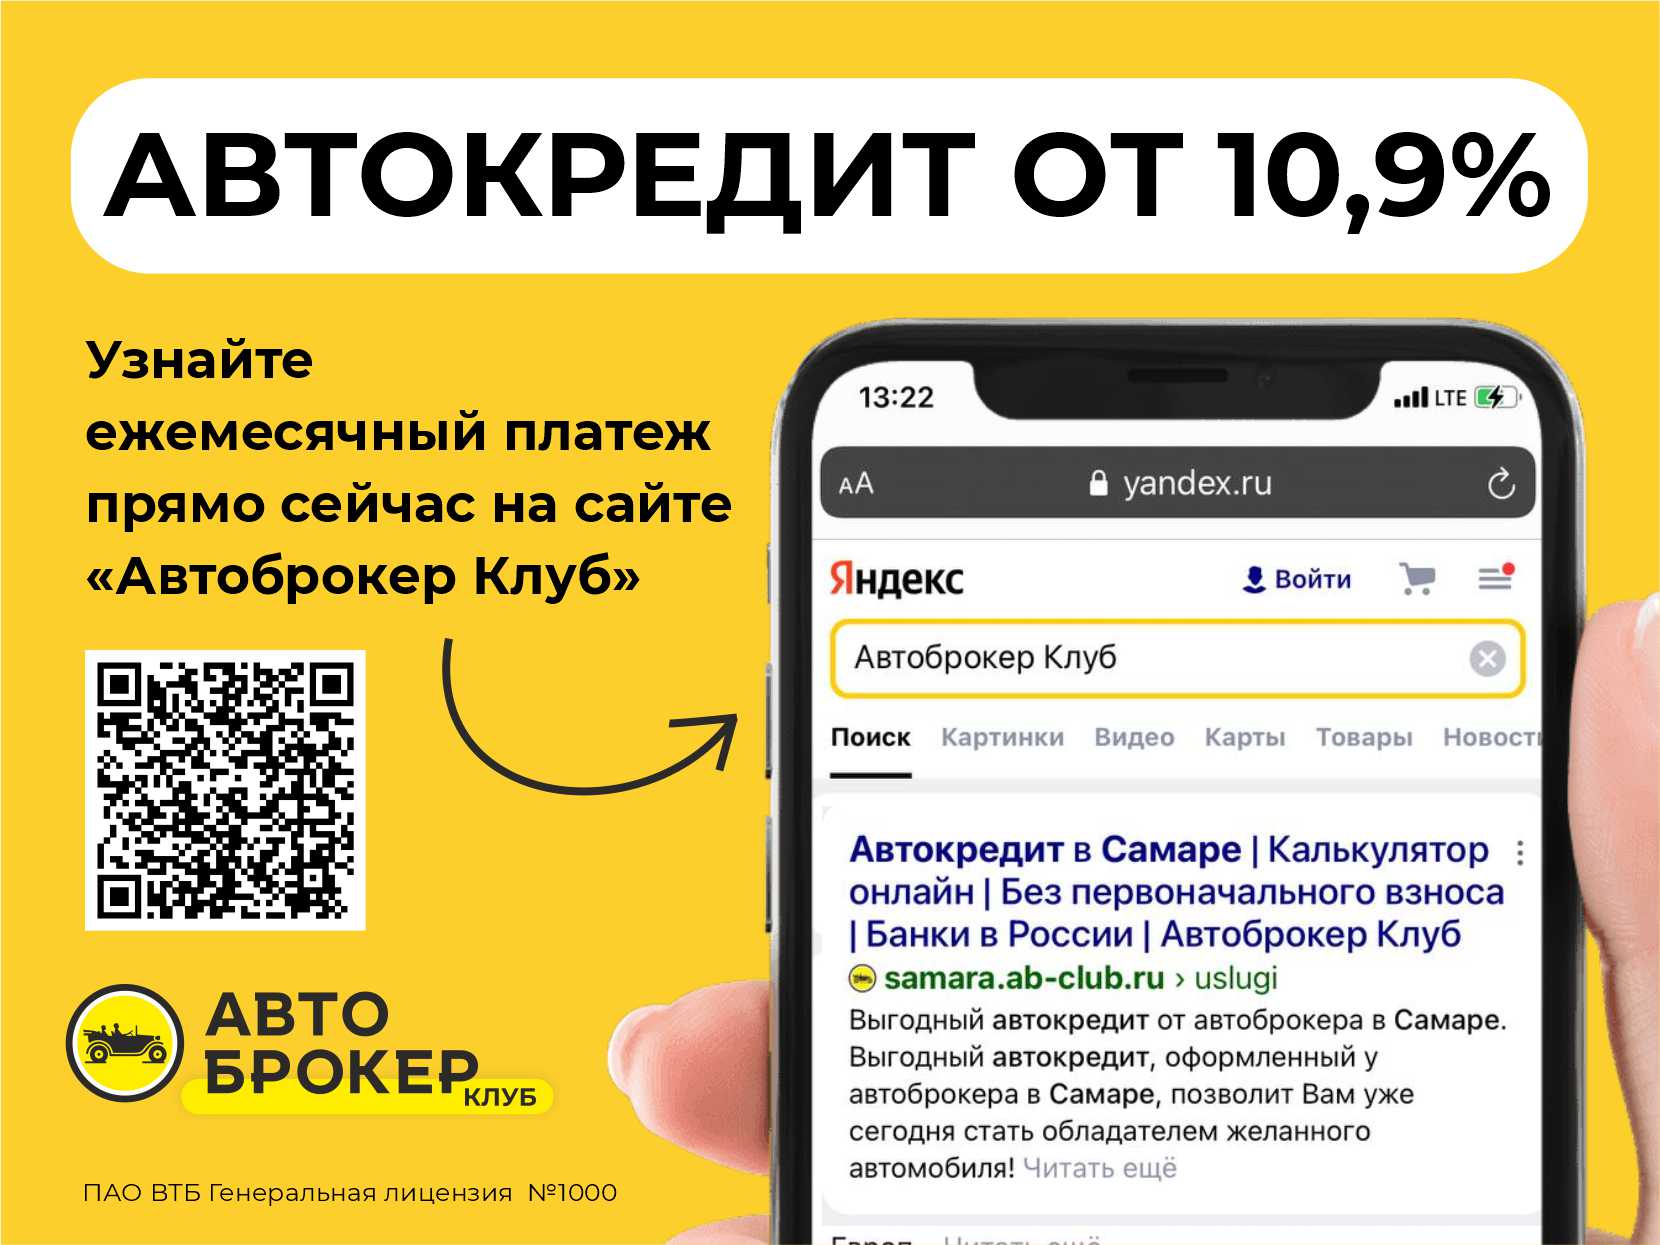 Купить б/у Renault Kaptur, 2021 год, 114 л.с. в Казани